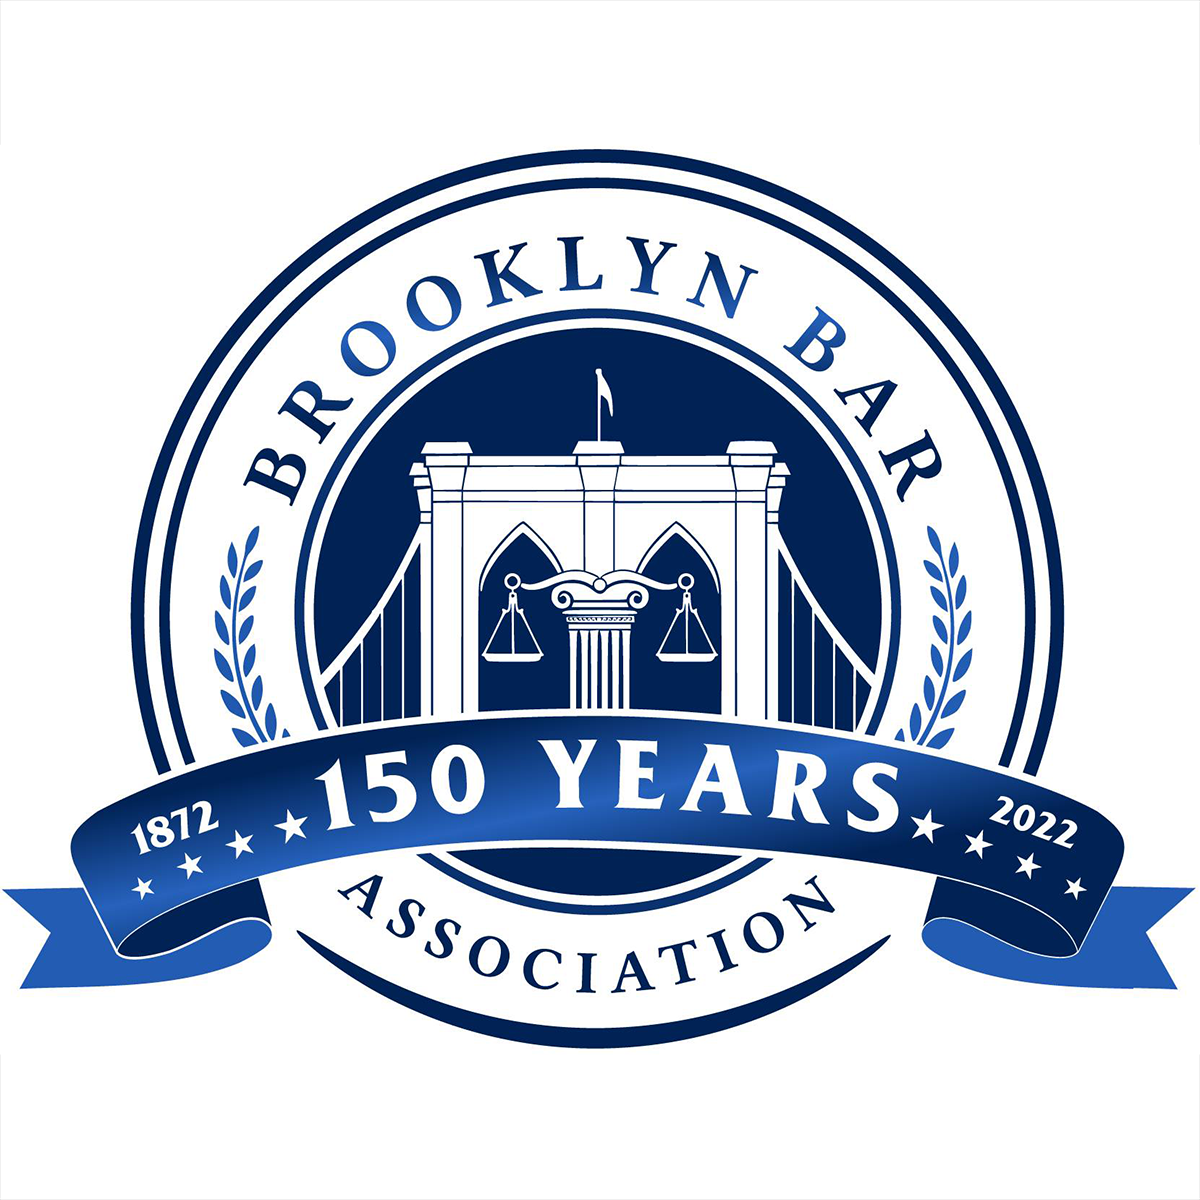 Brooklyn Bar Association Logo